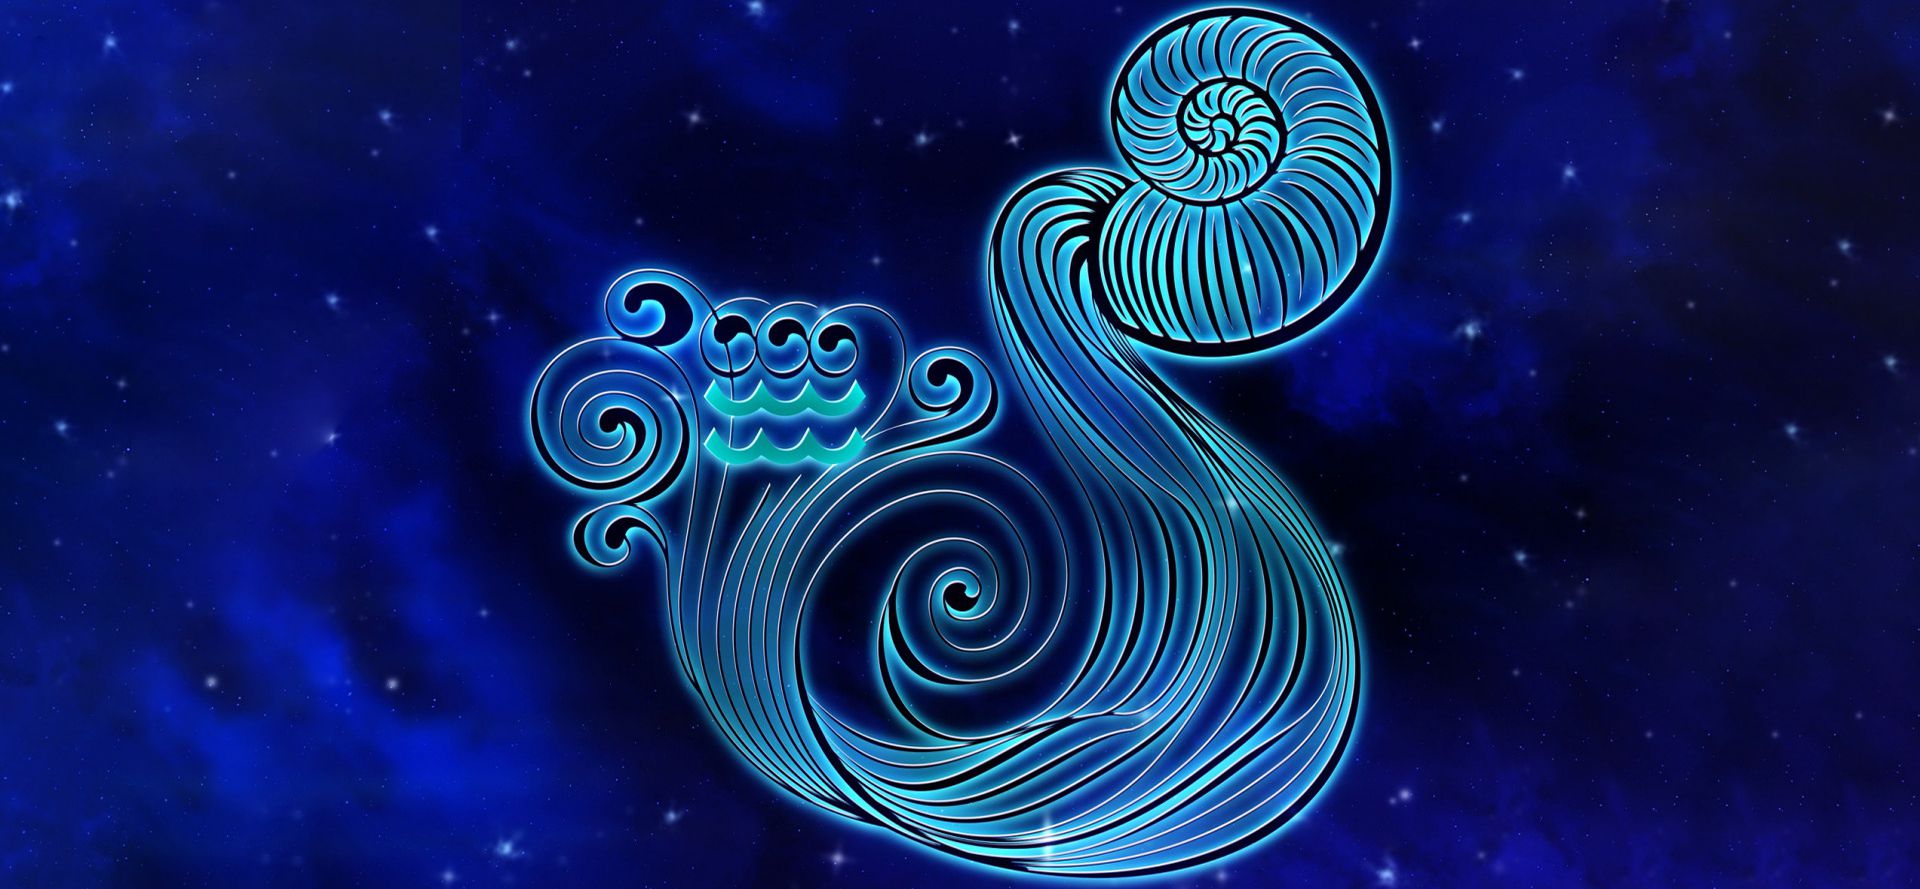 Aquarius zodiac sign.